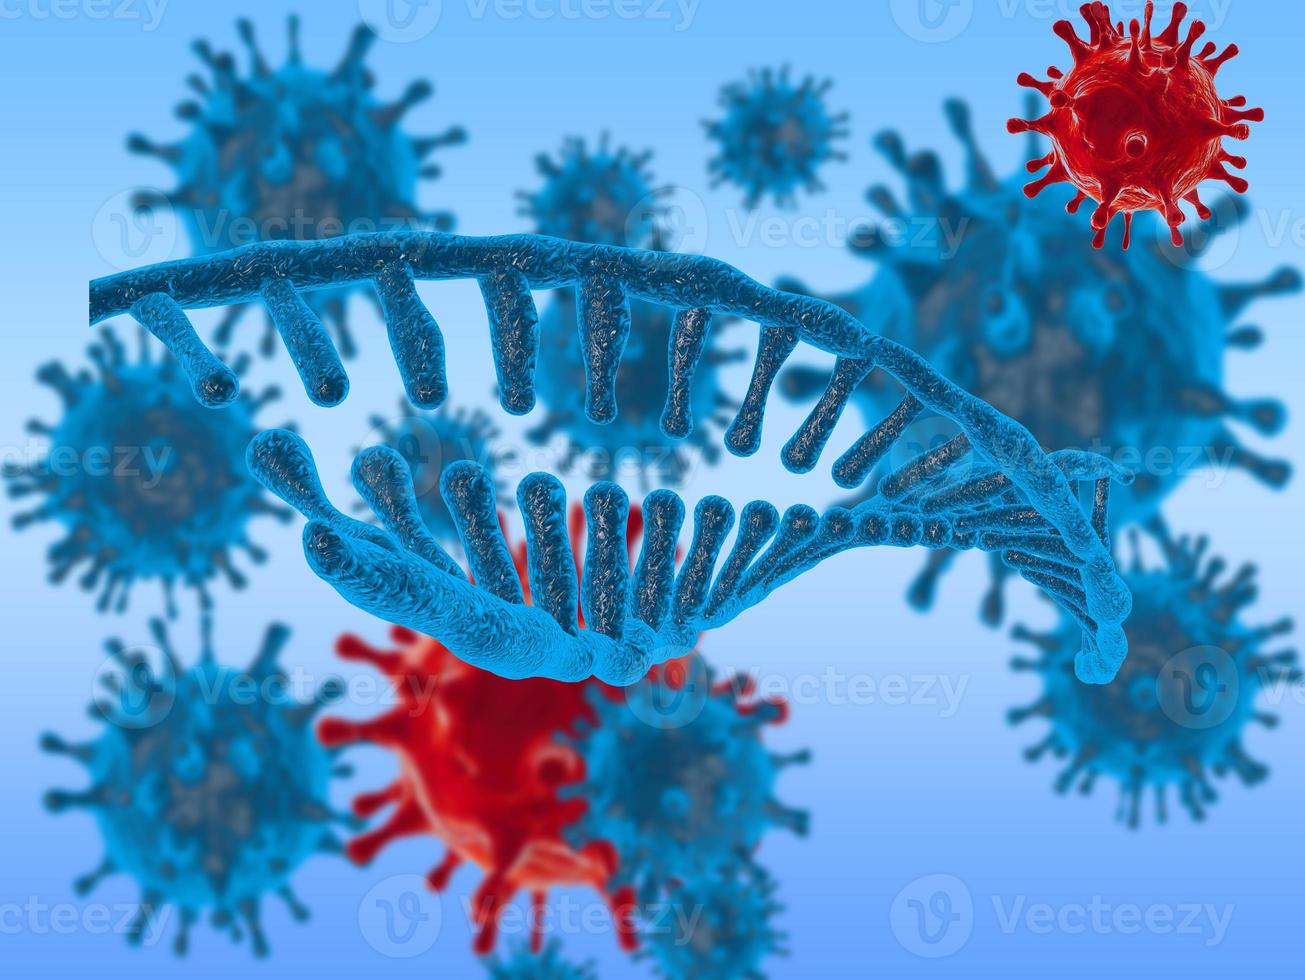 griep coronavirus over aarde achtergrond concept van genezing zoeken en verspreiden van ziekte. 3D-beeld. foto